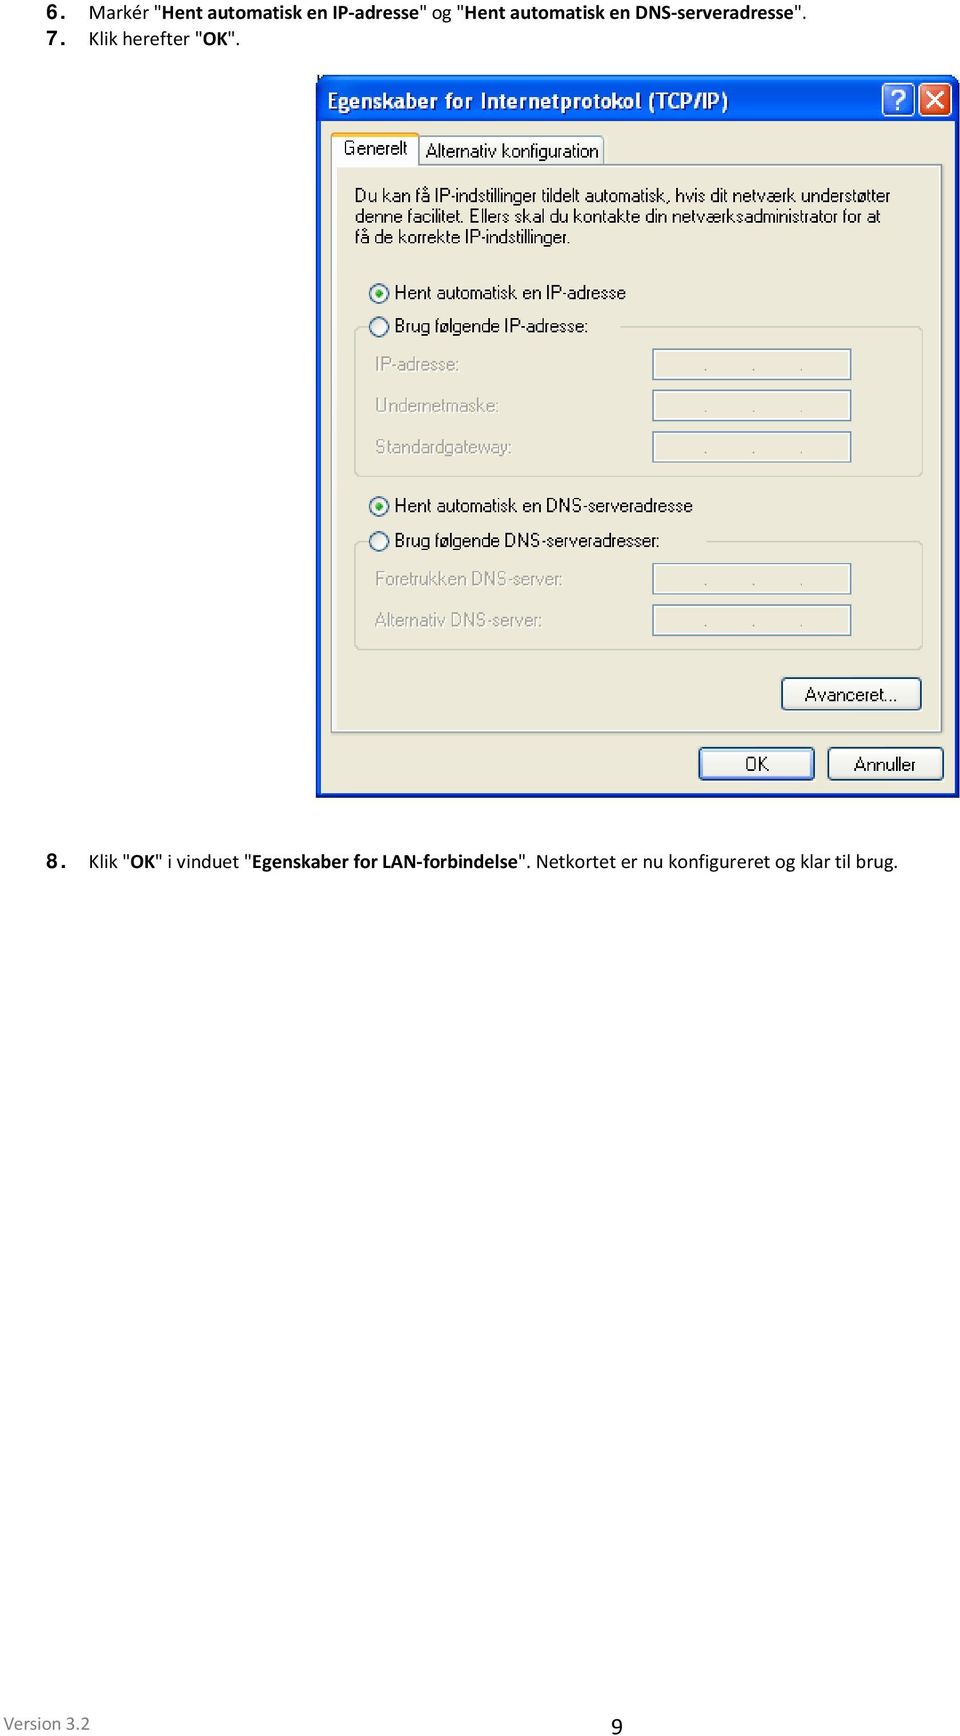 8. Klik "OK" i vinduet "Egenskaber for LAN-forbindelse".